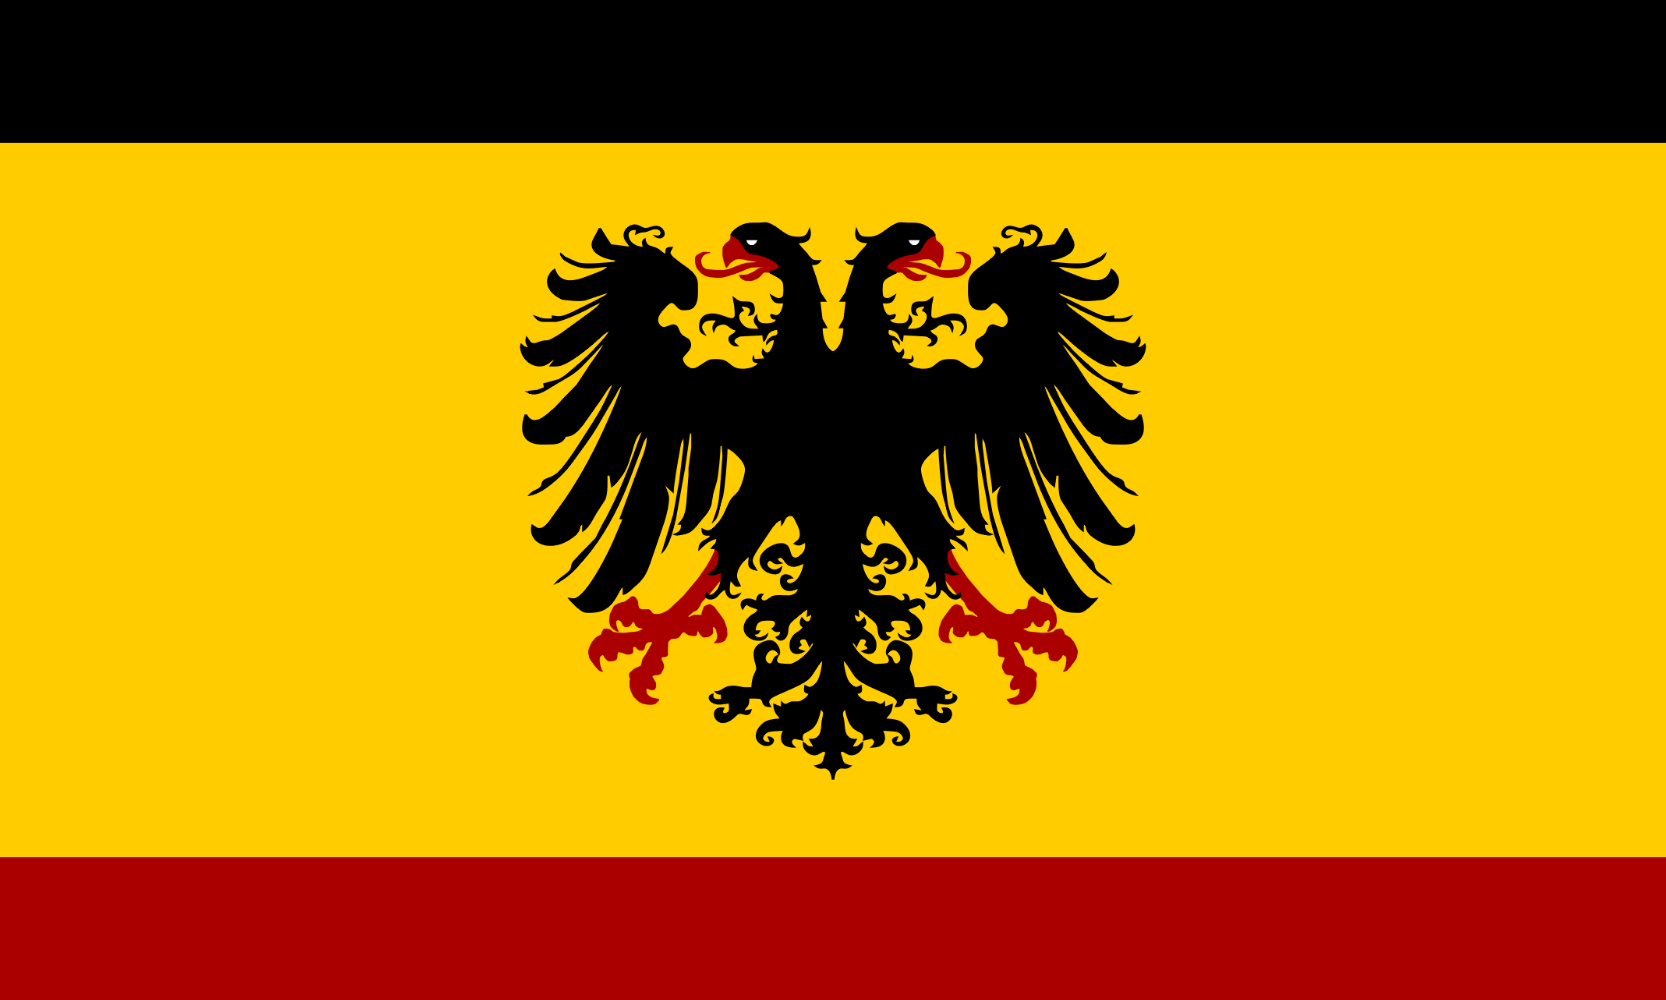 vlajka svata risa rimsa naroda nemeckeho